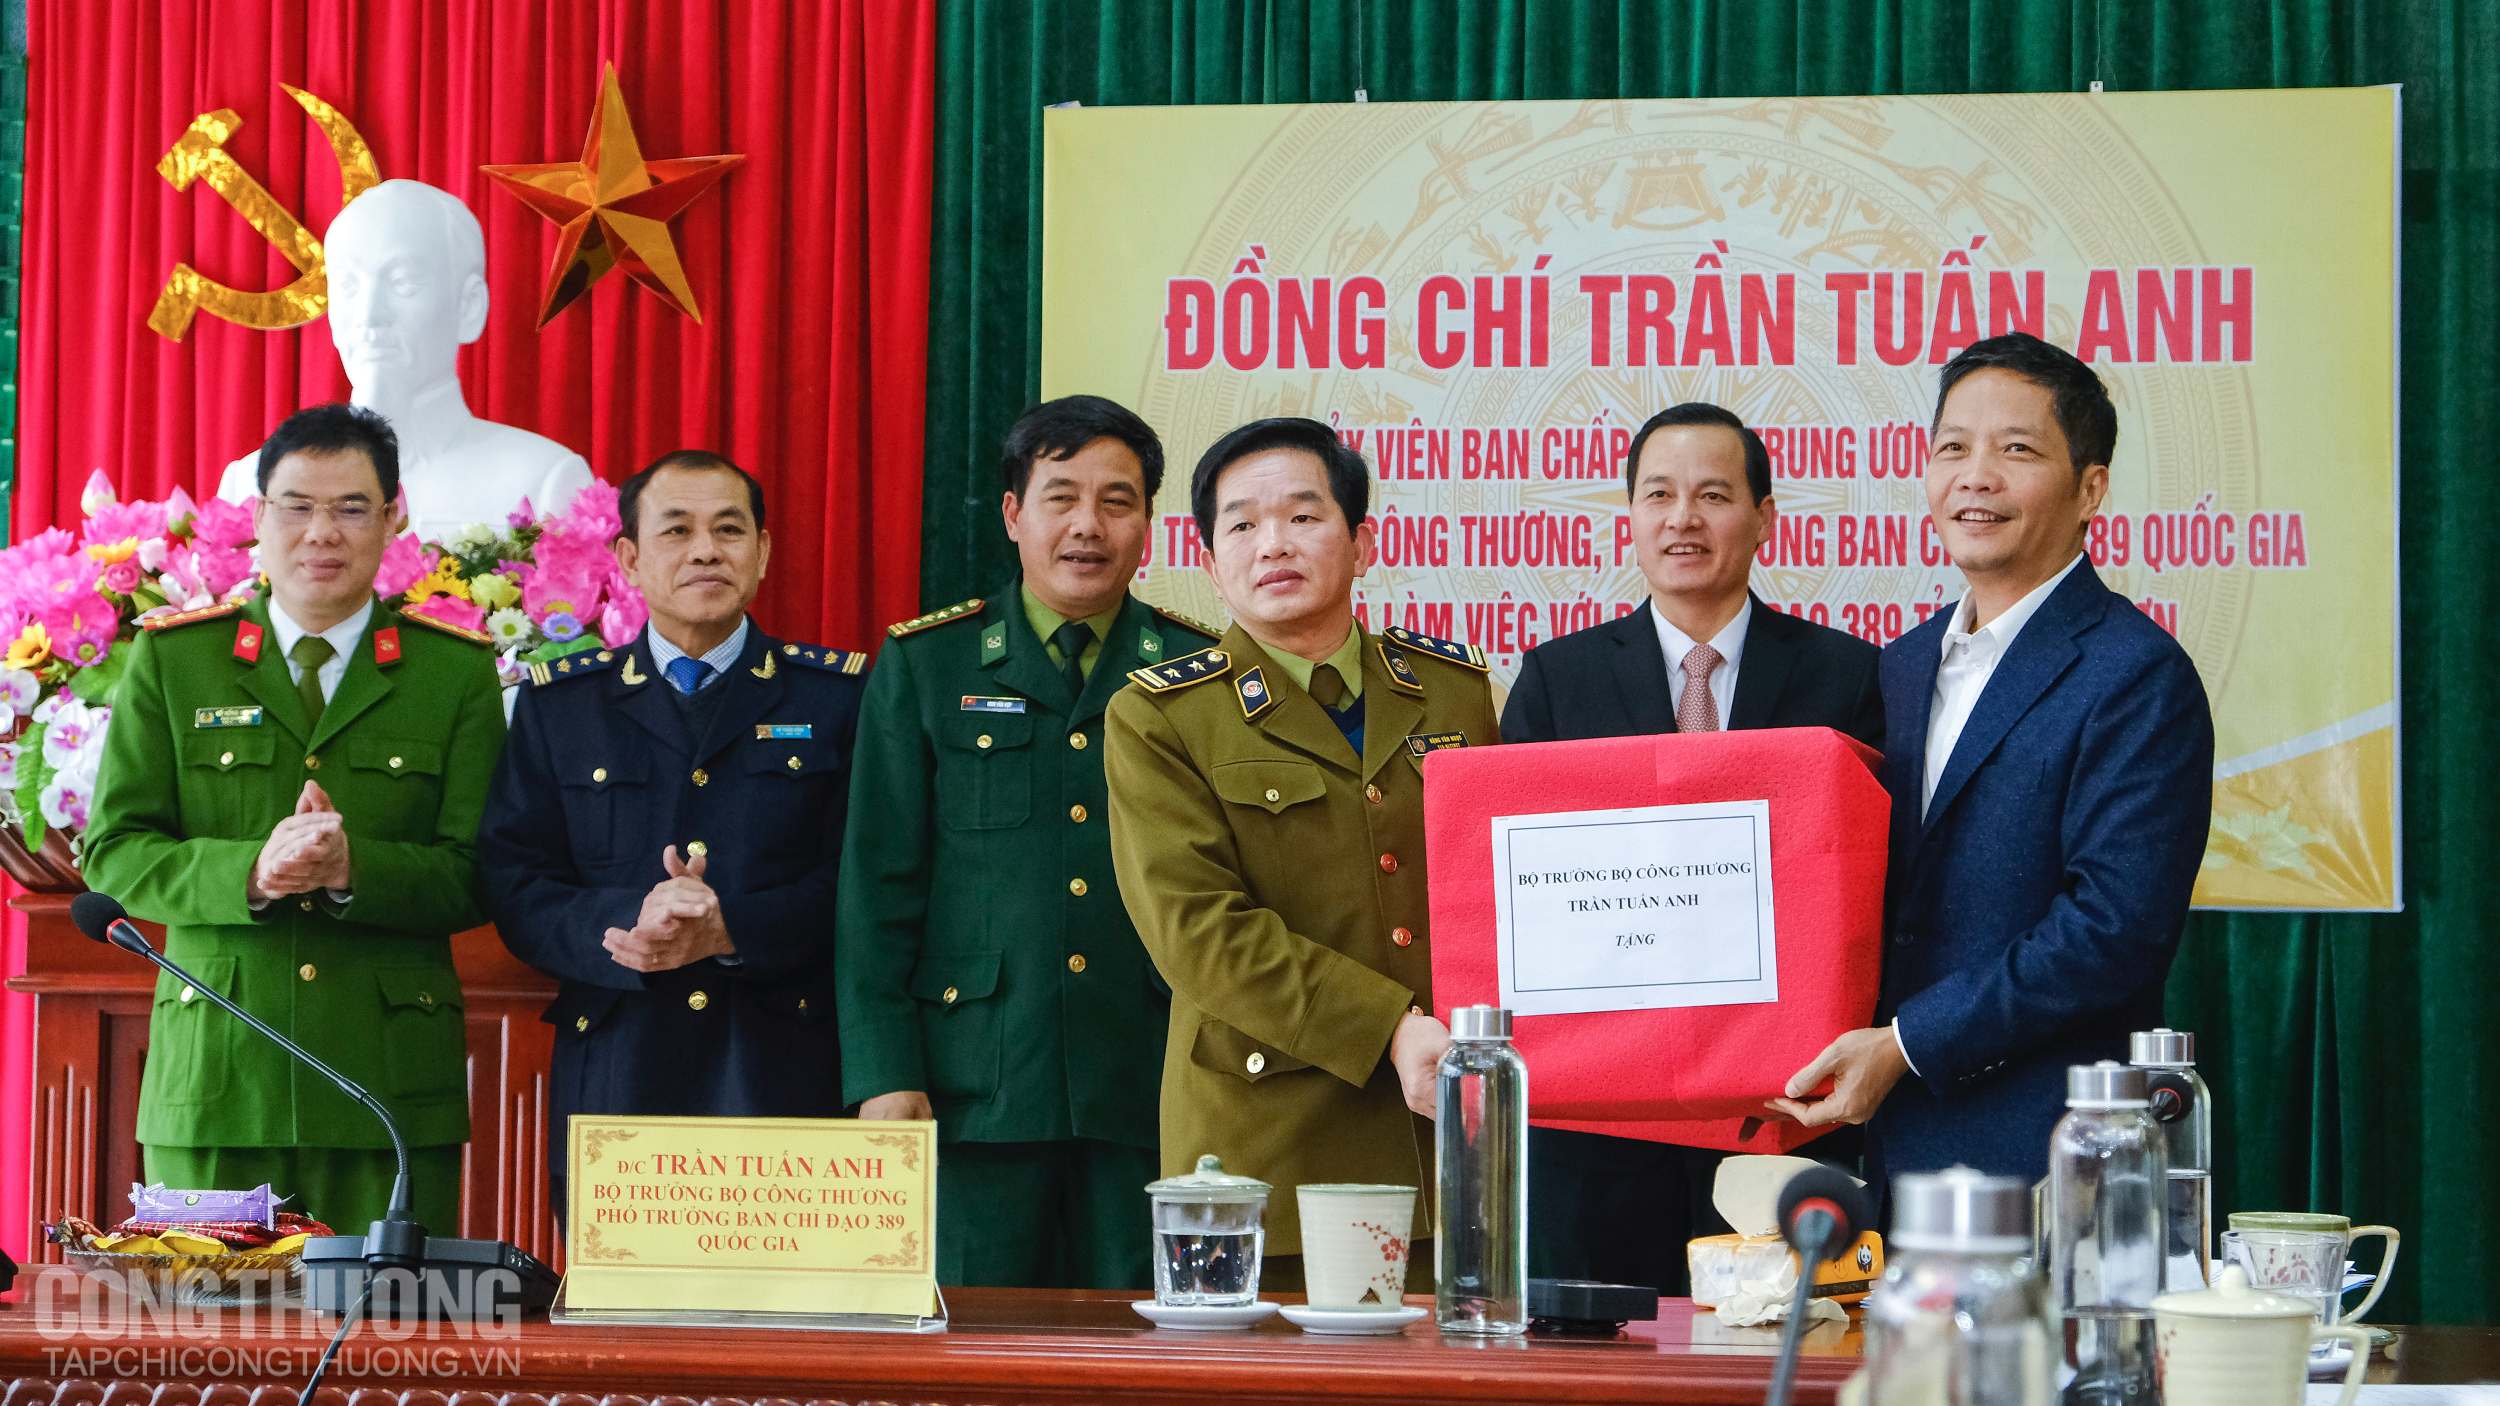 Bộ trưởng Trần Tuấn Anh trao quà cho đại diện các cơ quan chức năng tỉnh Lạng Sơn nhân dịp Tết Nguyên đán